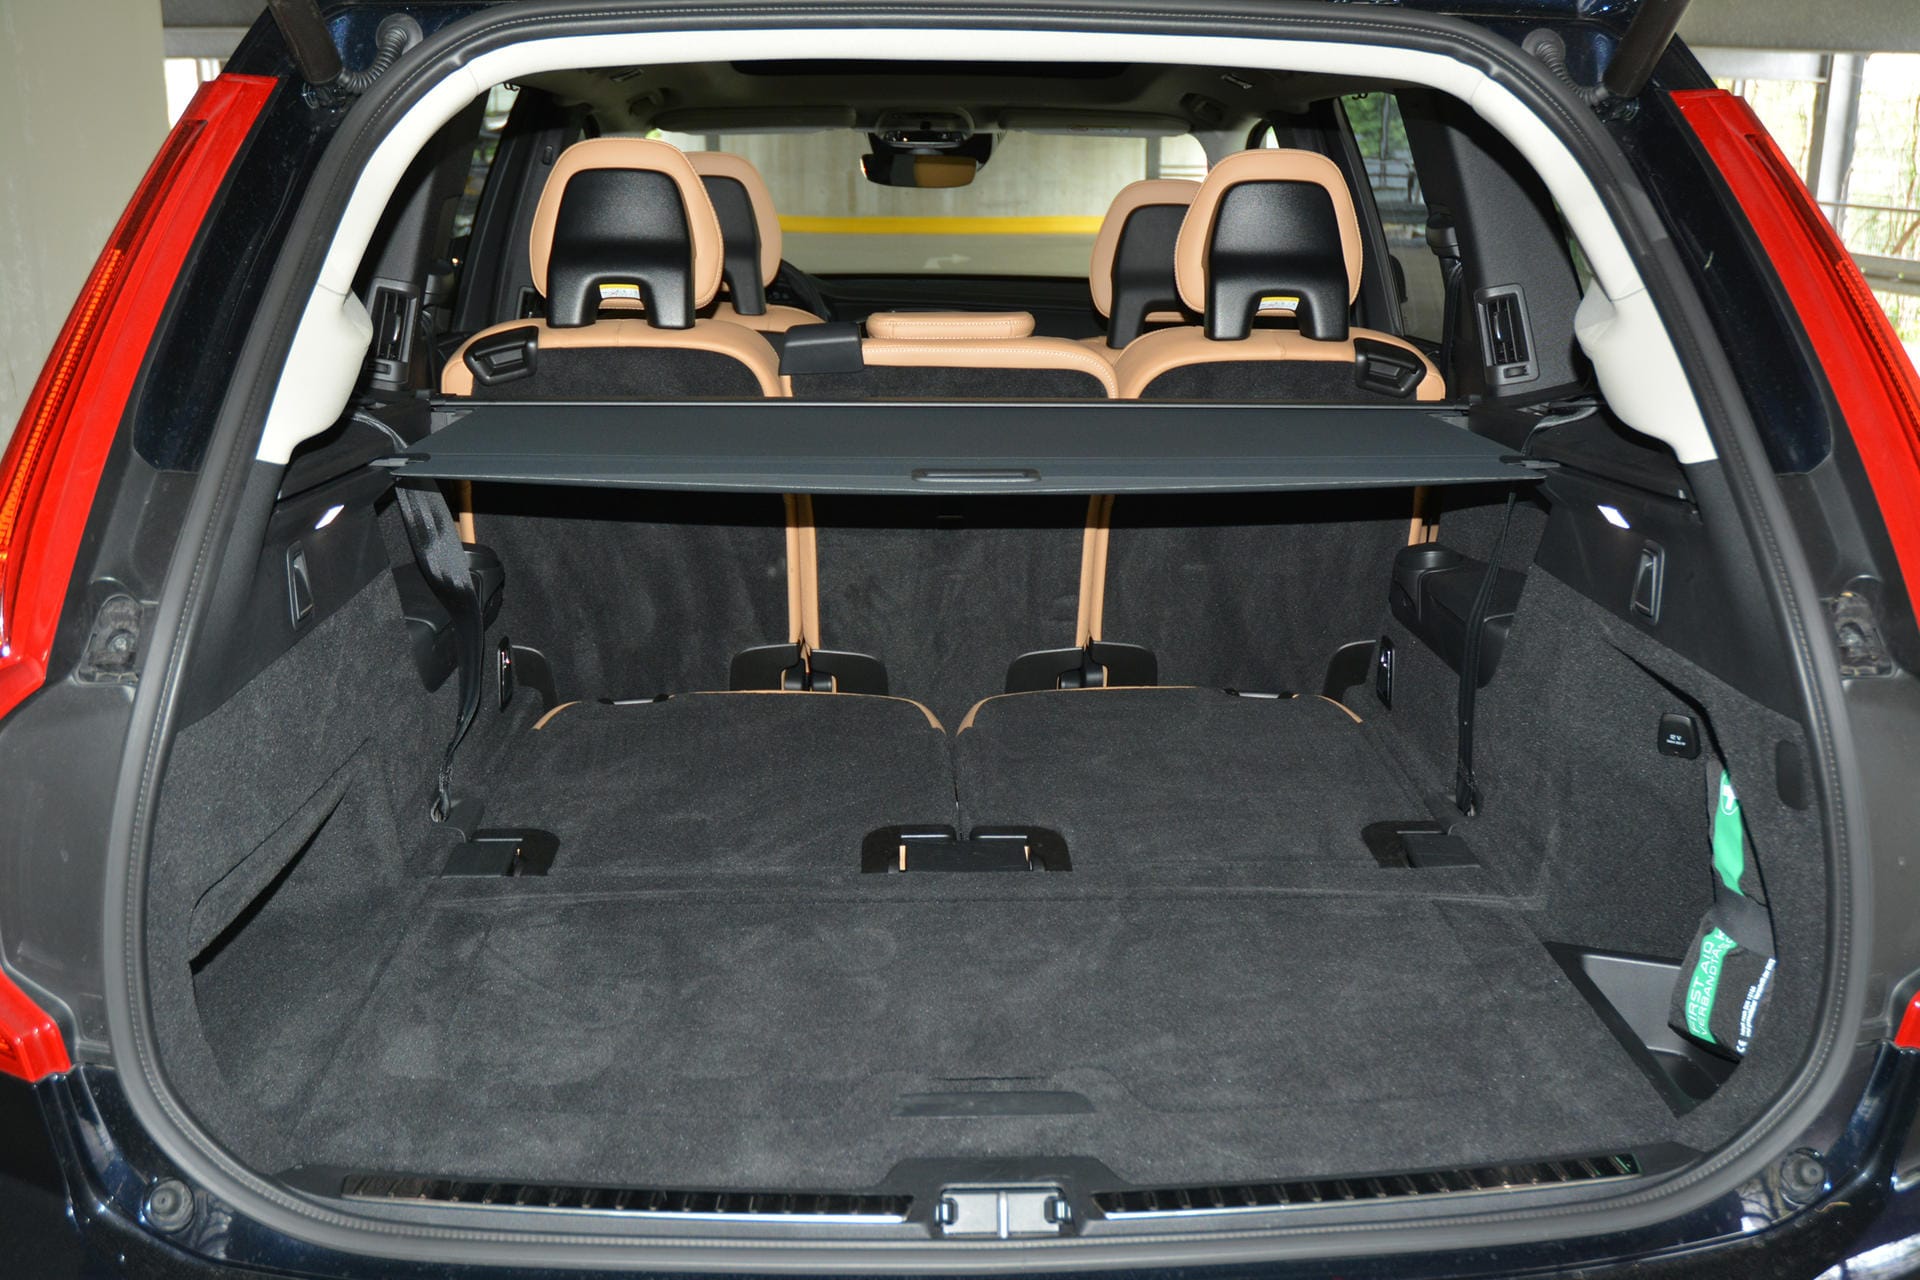 Der Volvo in der Ausstattung "Momentum" kann auch als Siebensitzer benutzt werden - dafür werden die Sitze einfach hochgeklappt.